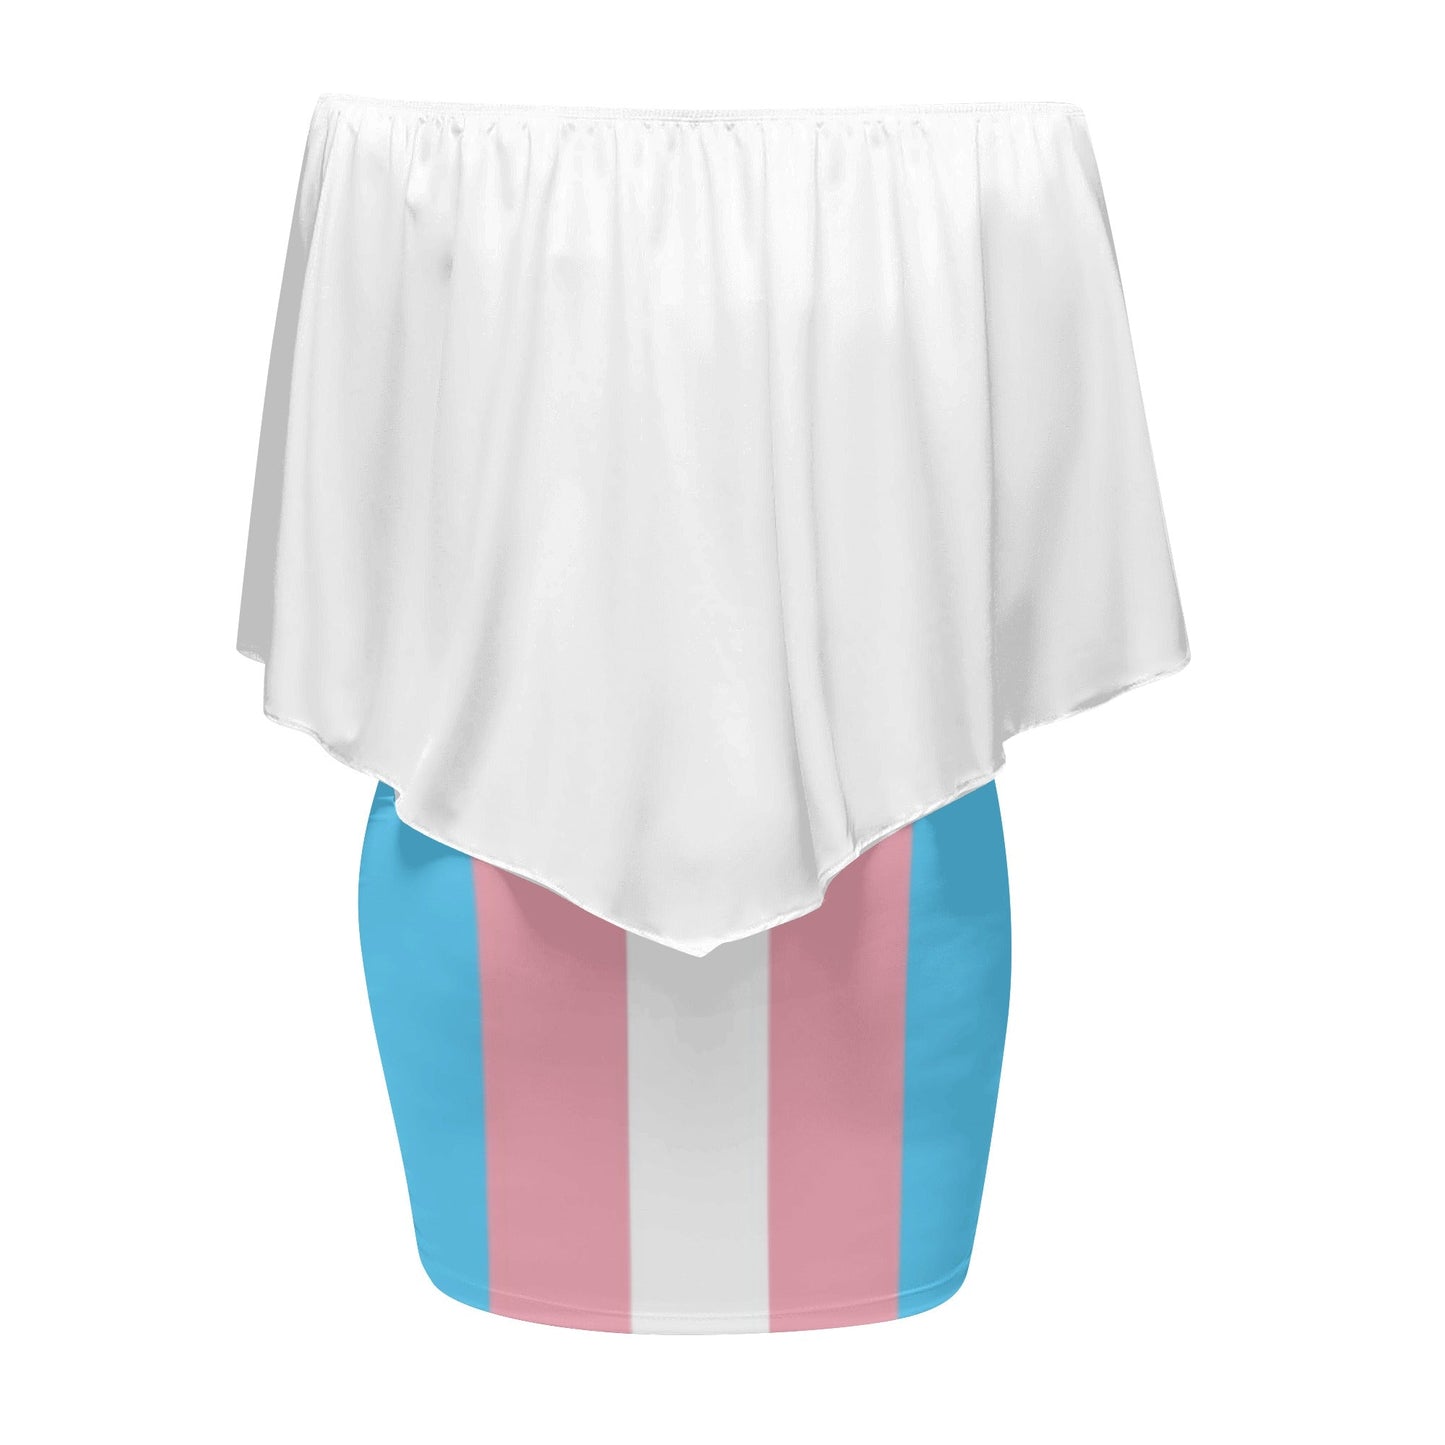 Trans Coloured Trans Pride Off-Shoulder White Figure Hugging Tube Dress